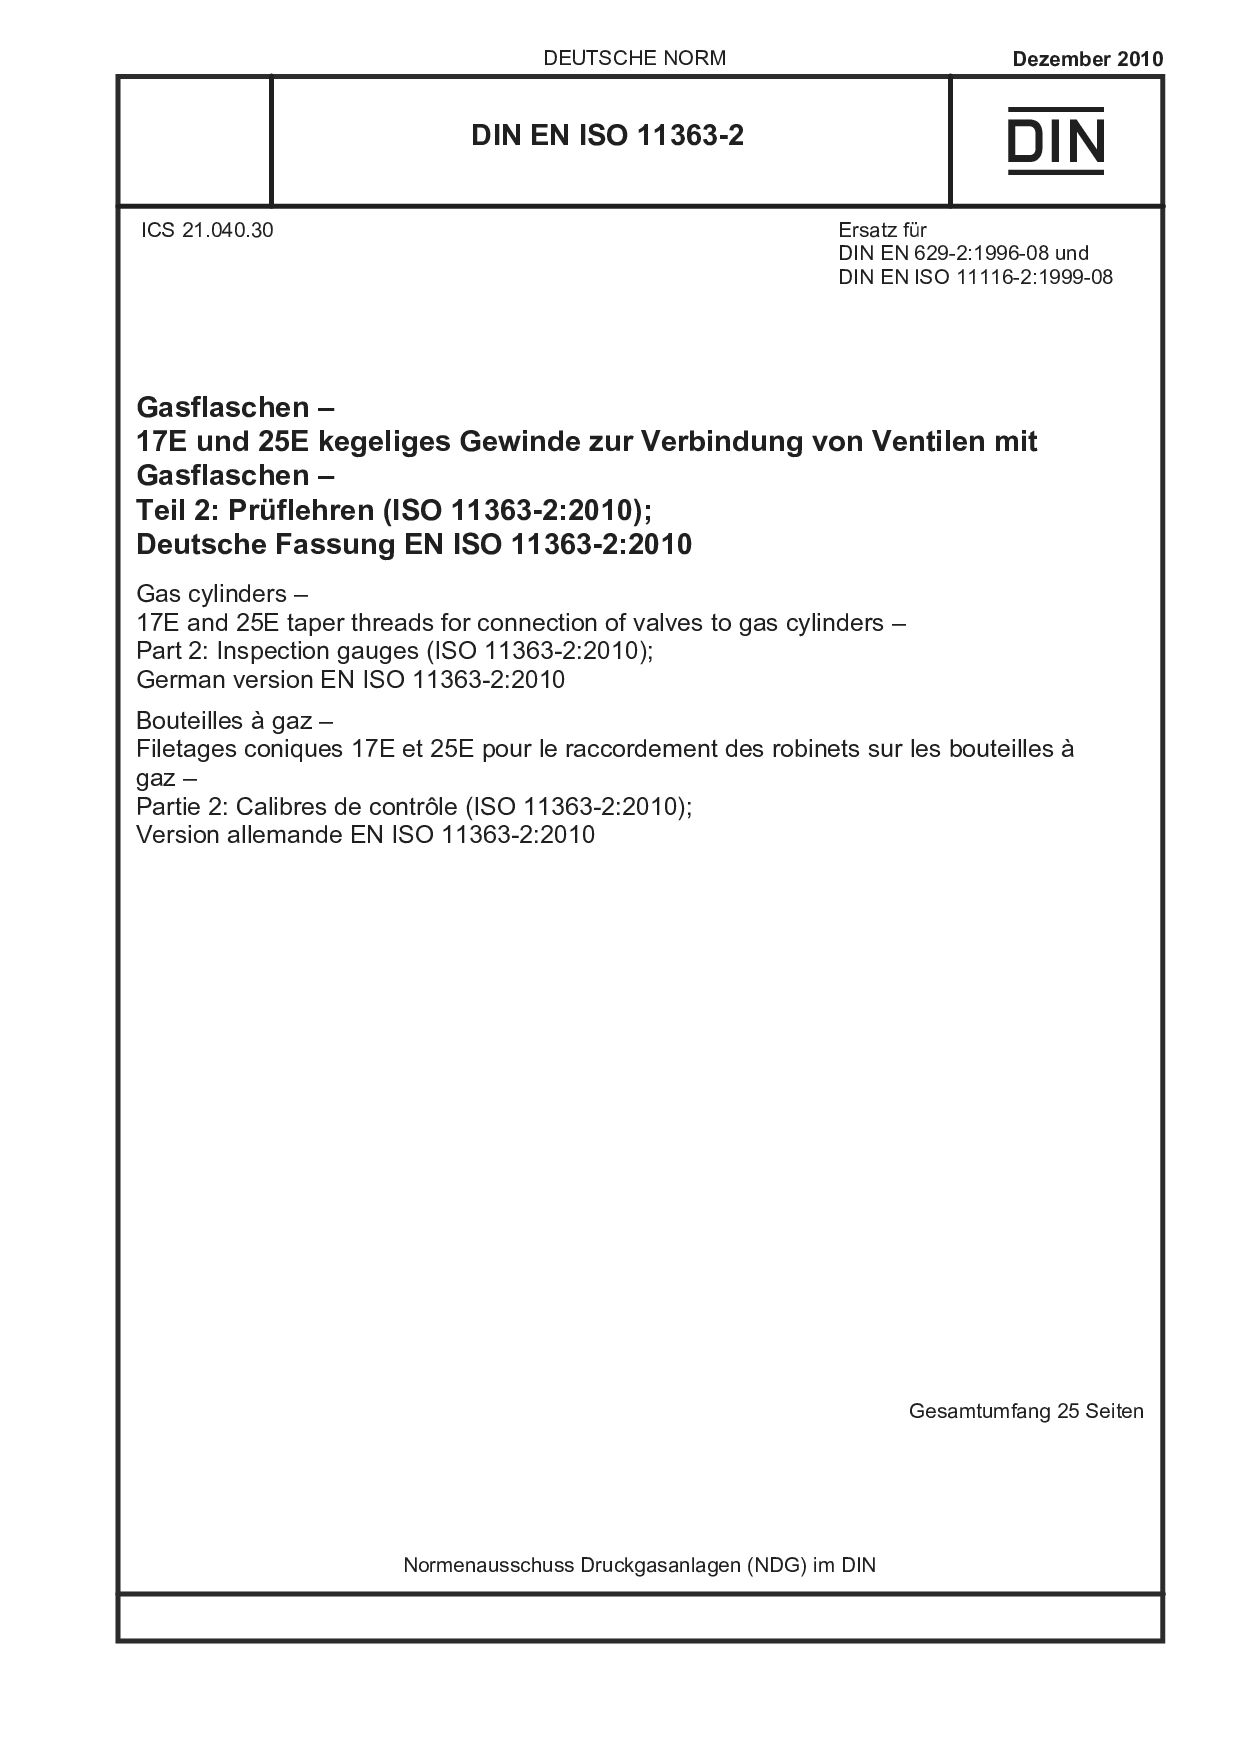 DIN EN ISO 11363-2:2010封面图